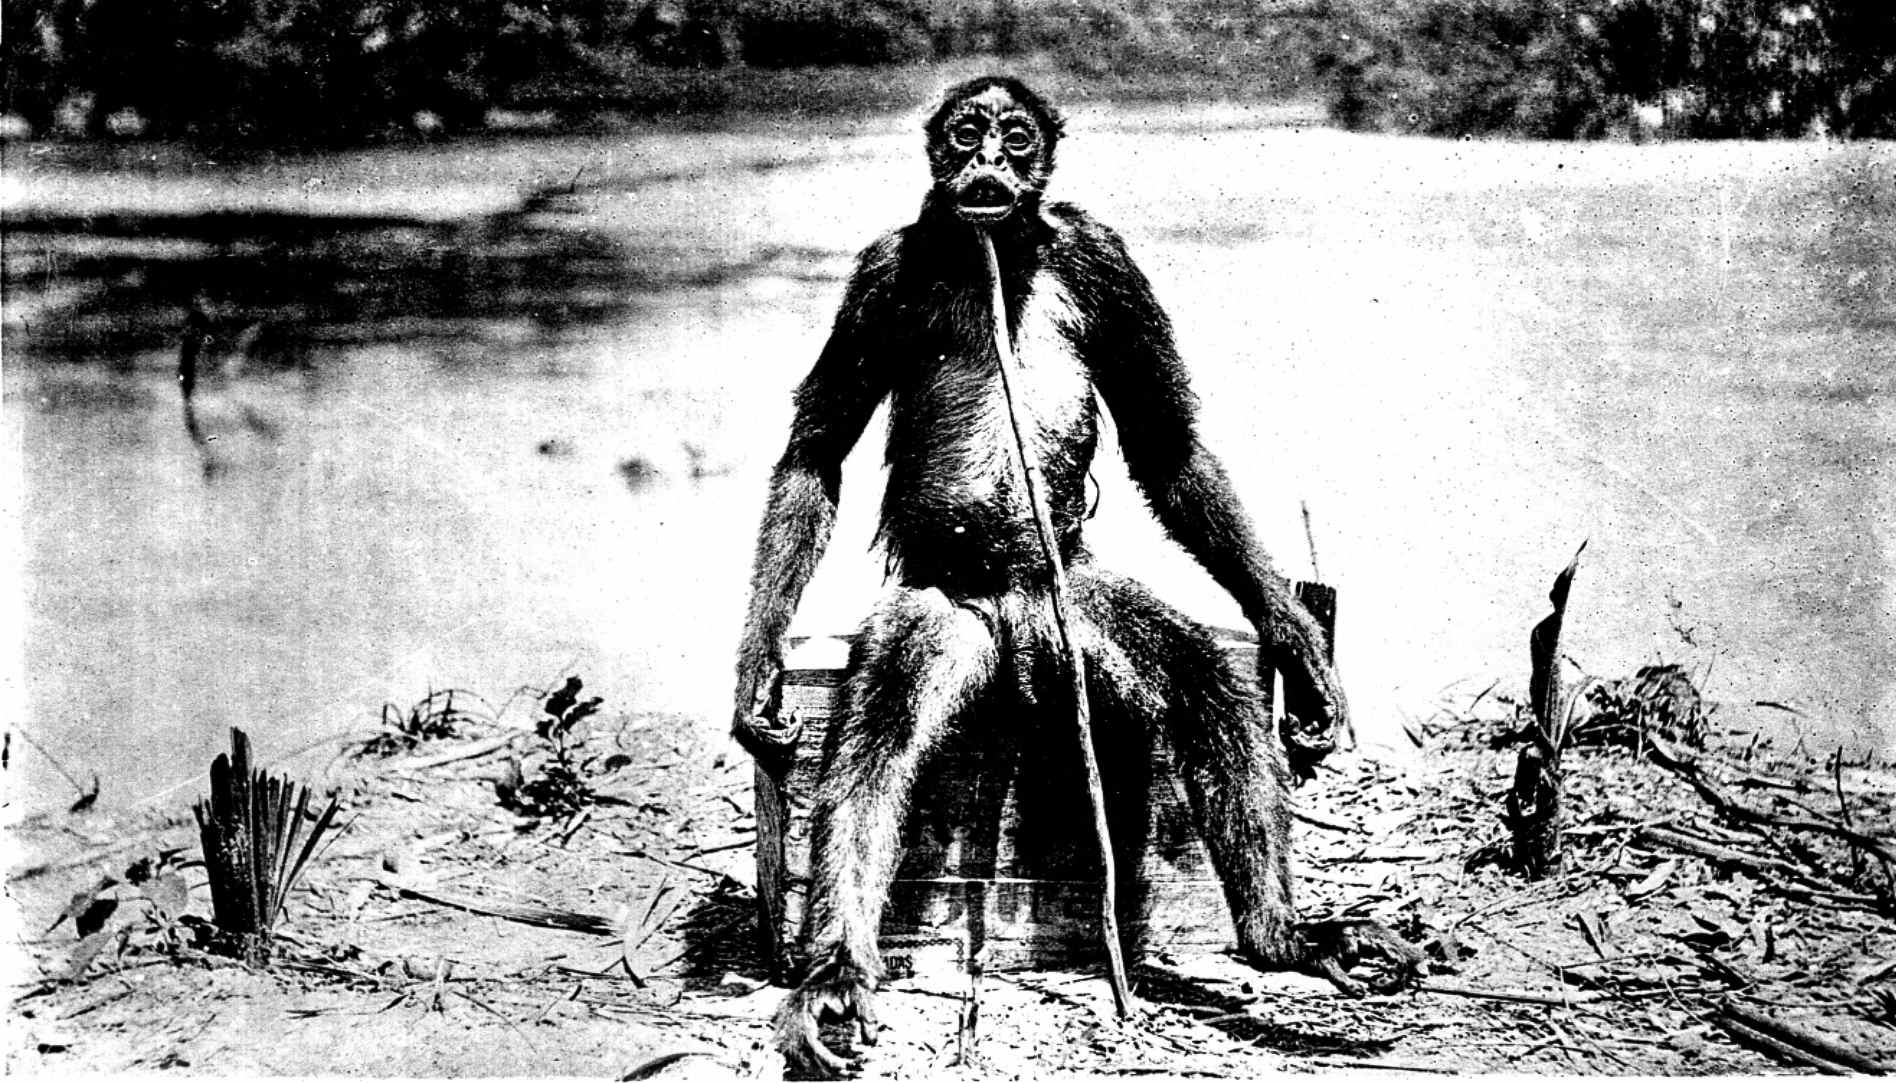 نسخه کمیاب عکس کامل از میمون دی لویز – "Ameranthropoides loysi" از سال 1929